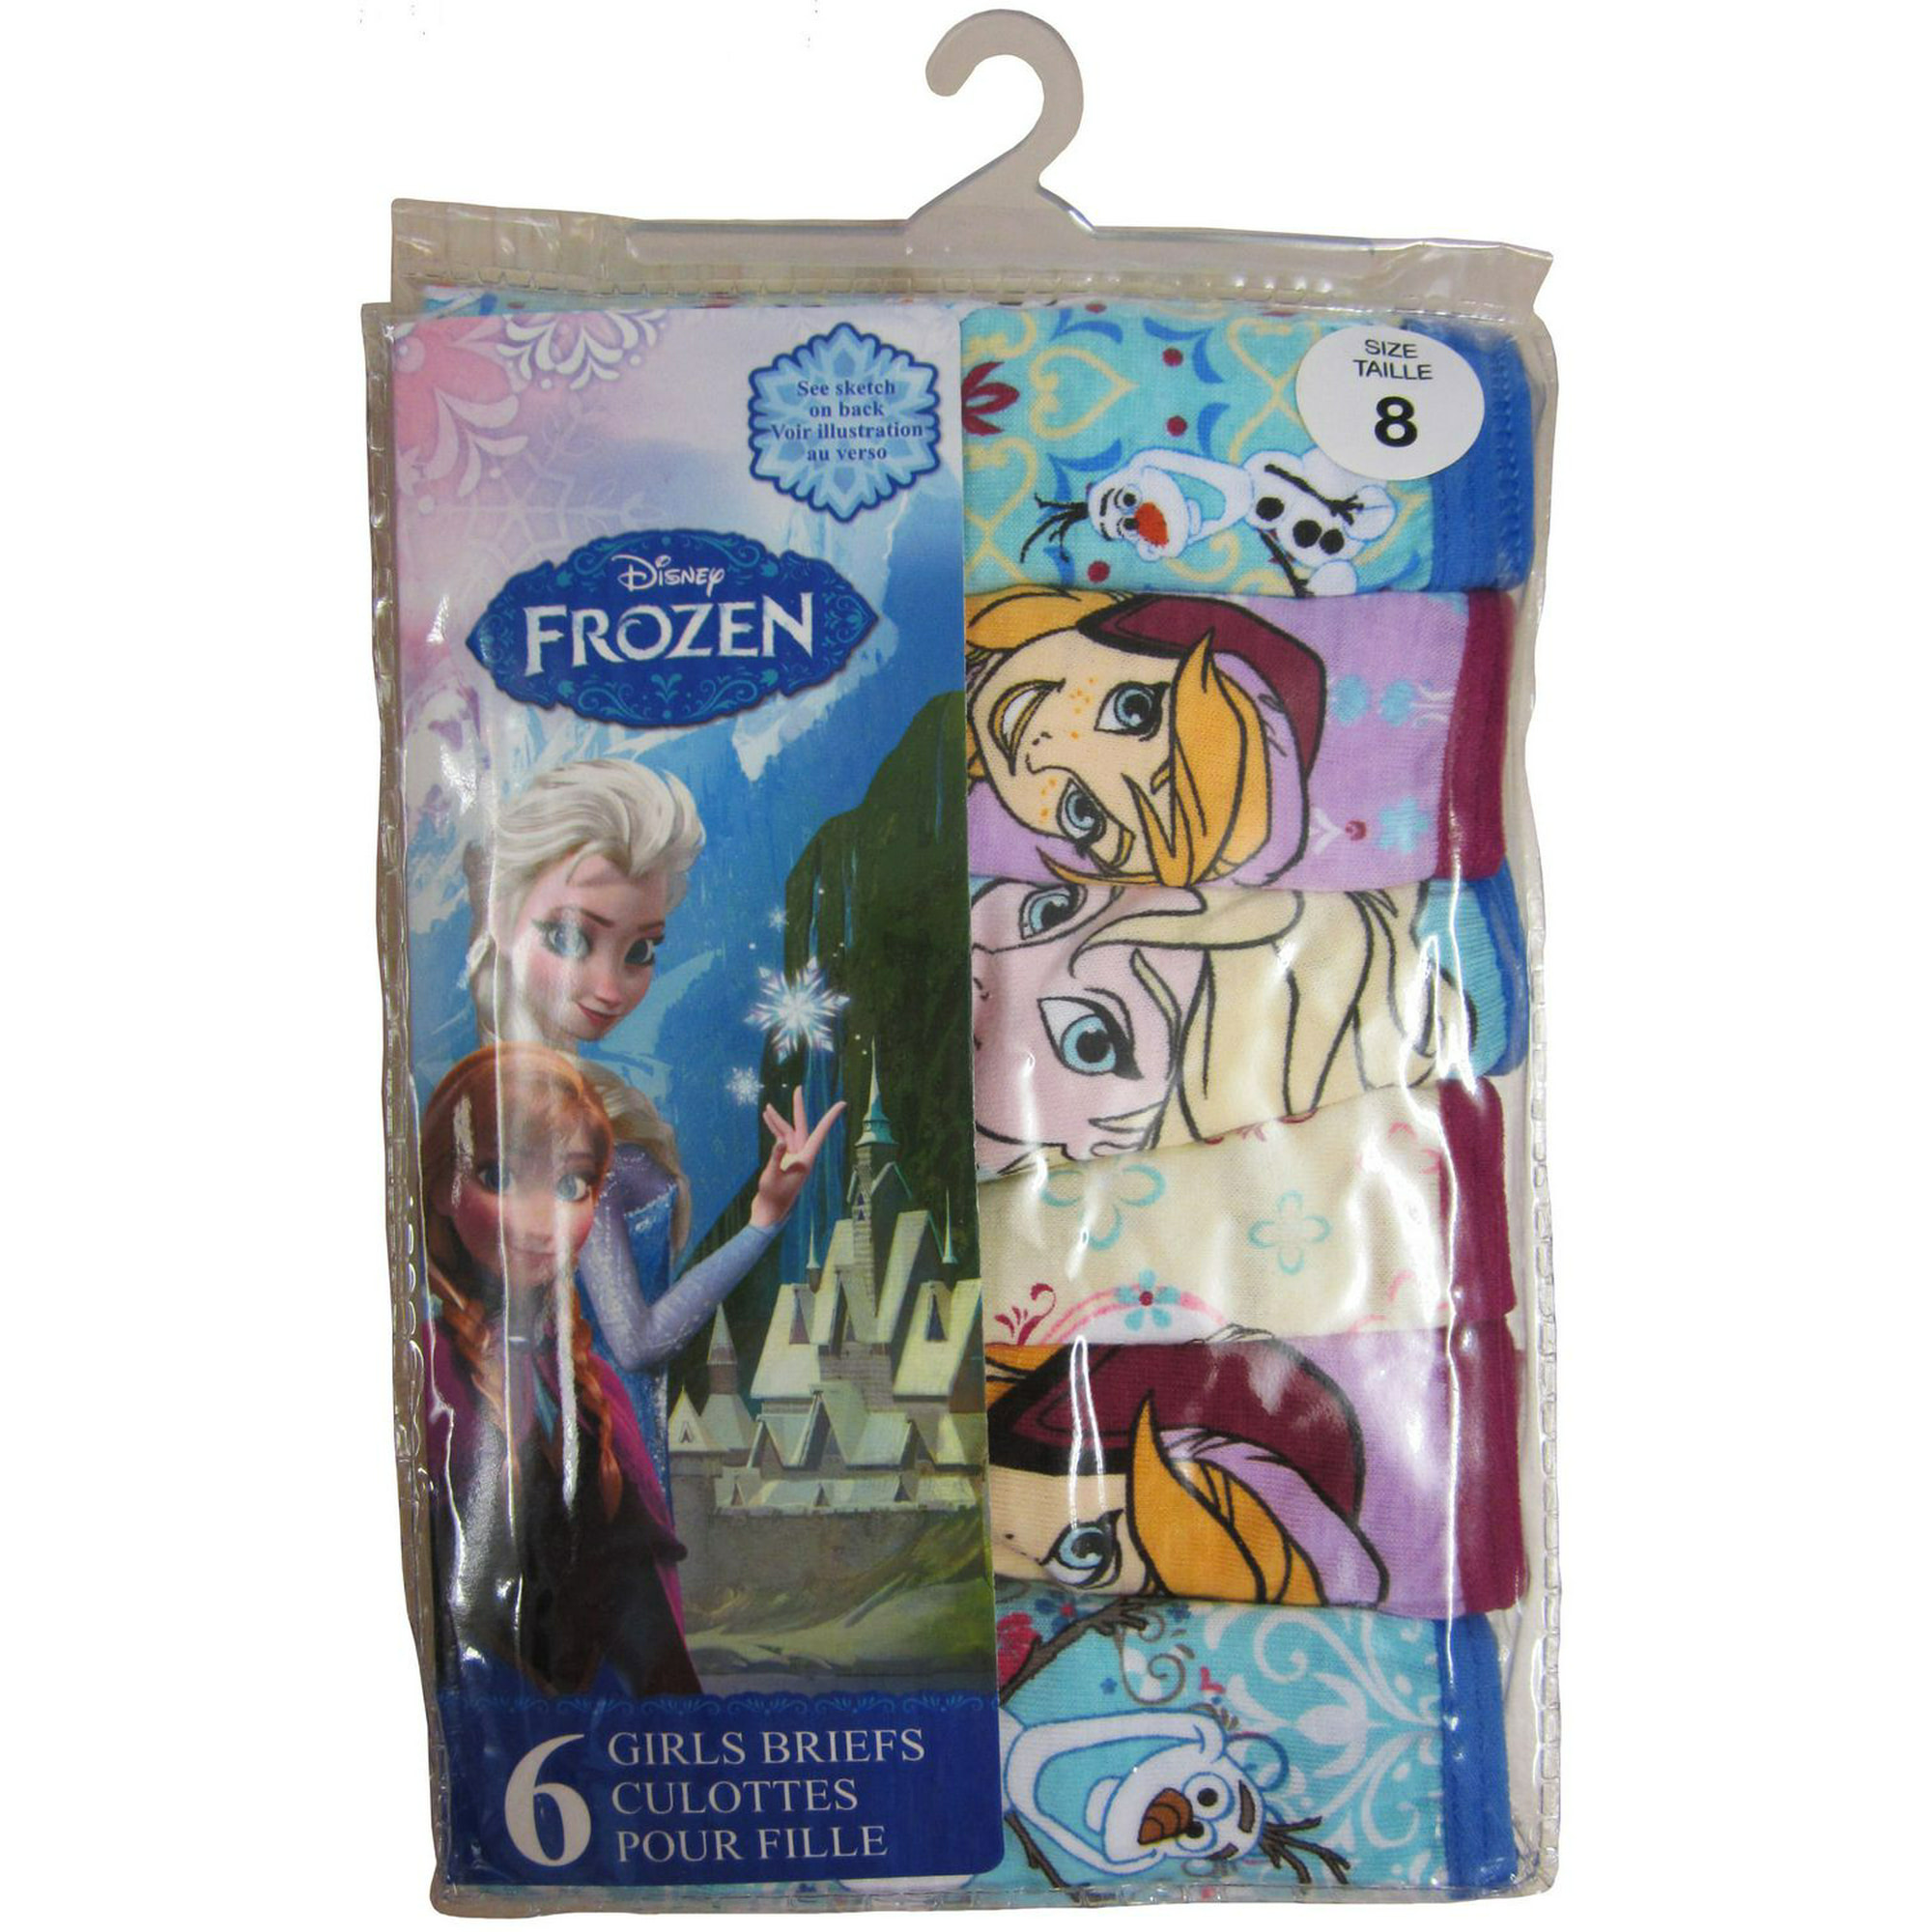 Frozen 2 Toddler Girls' Panties, 6 Pack Sizes 2T-4T 